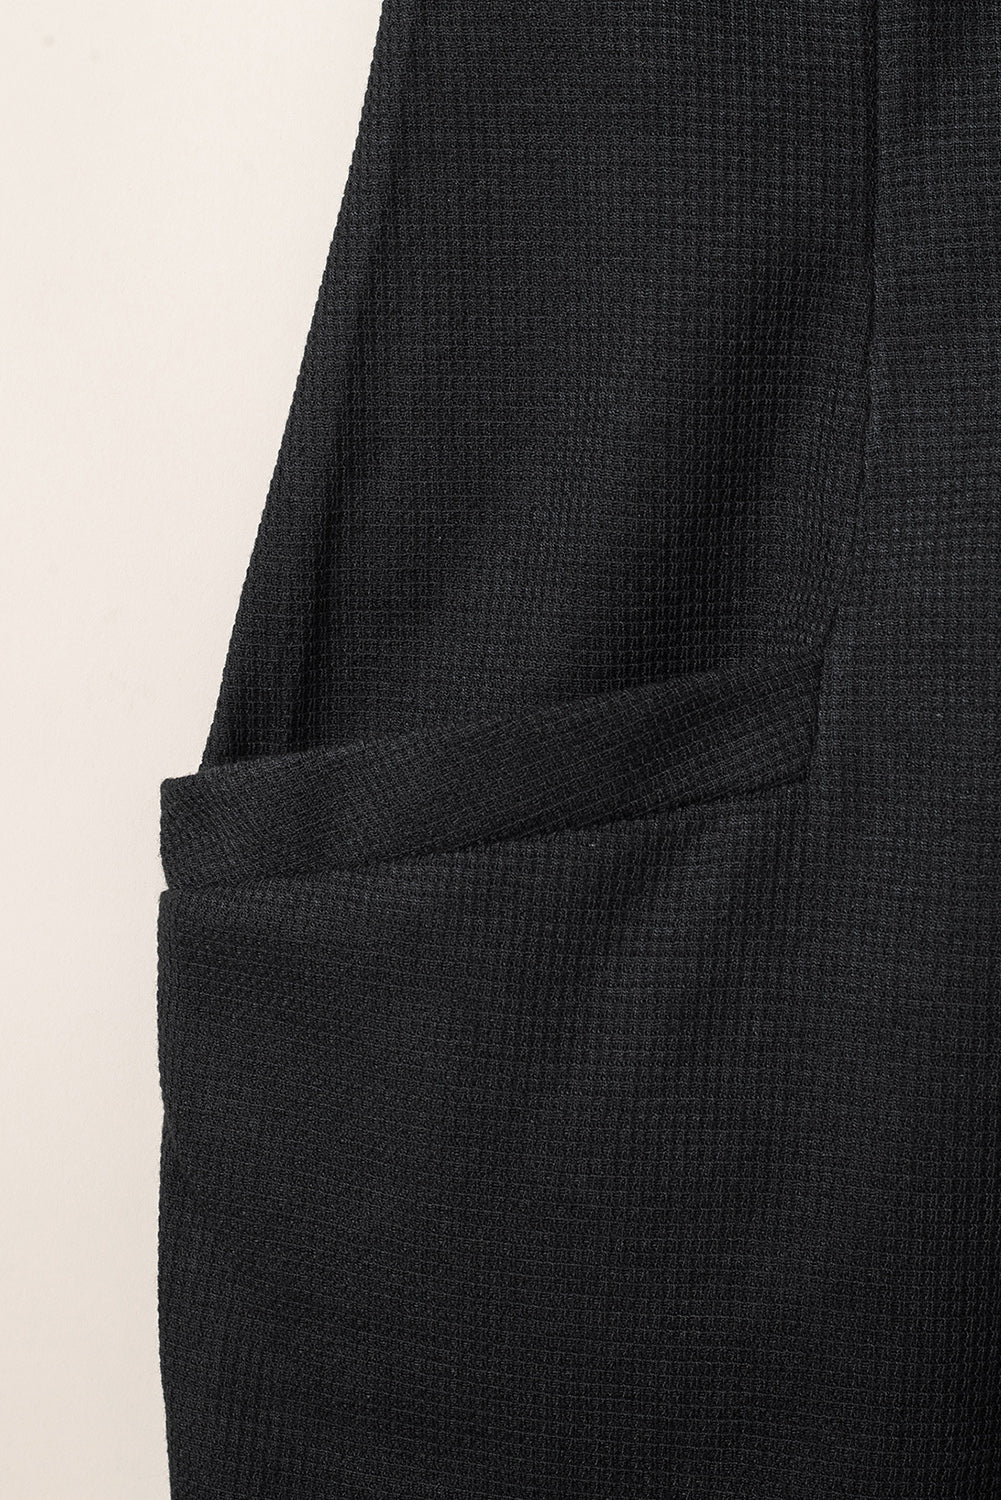 Črn teksturiran kombinezon brez rokavov z žepi in v-izrezom